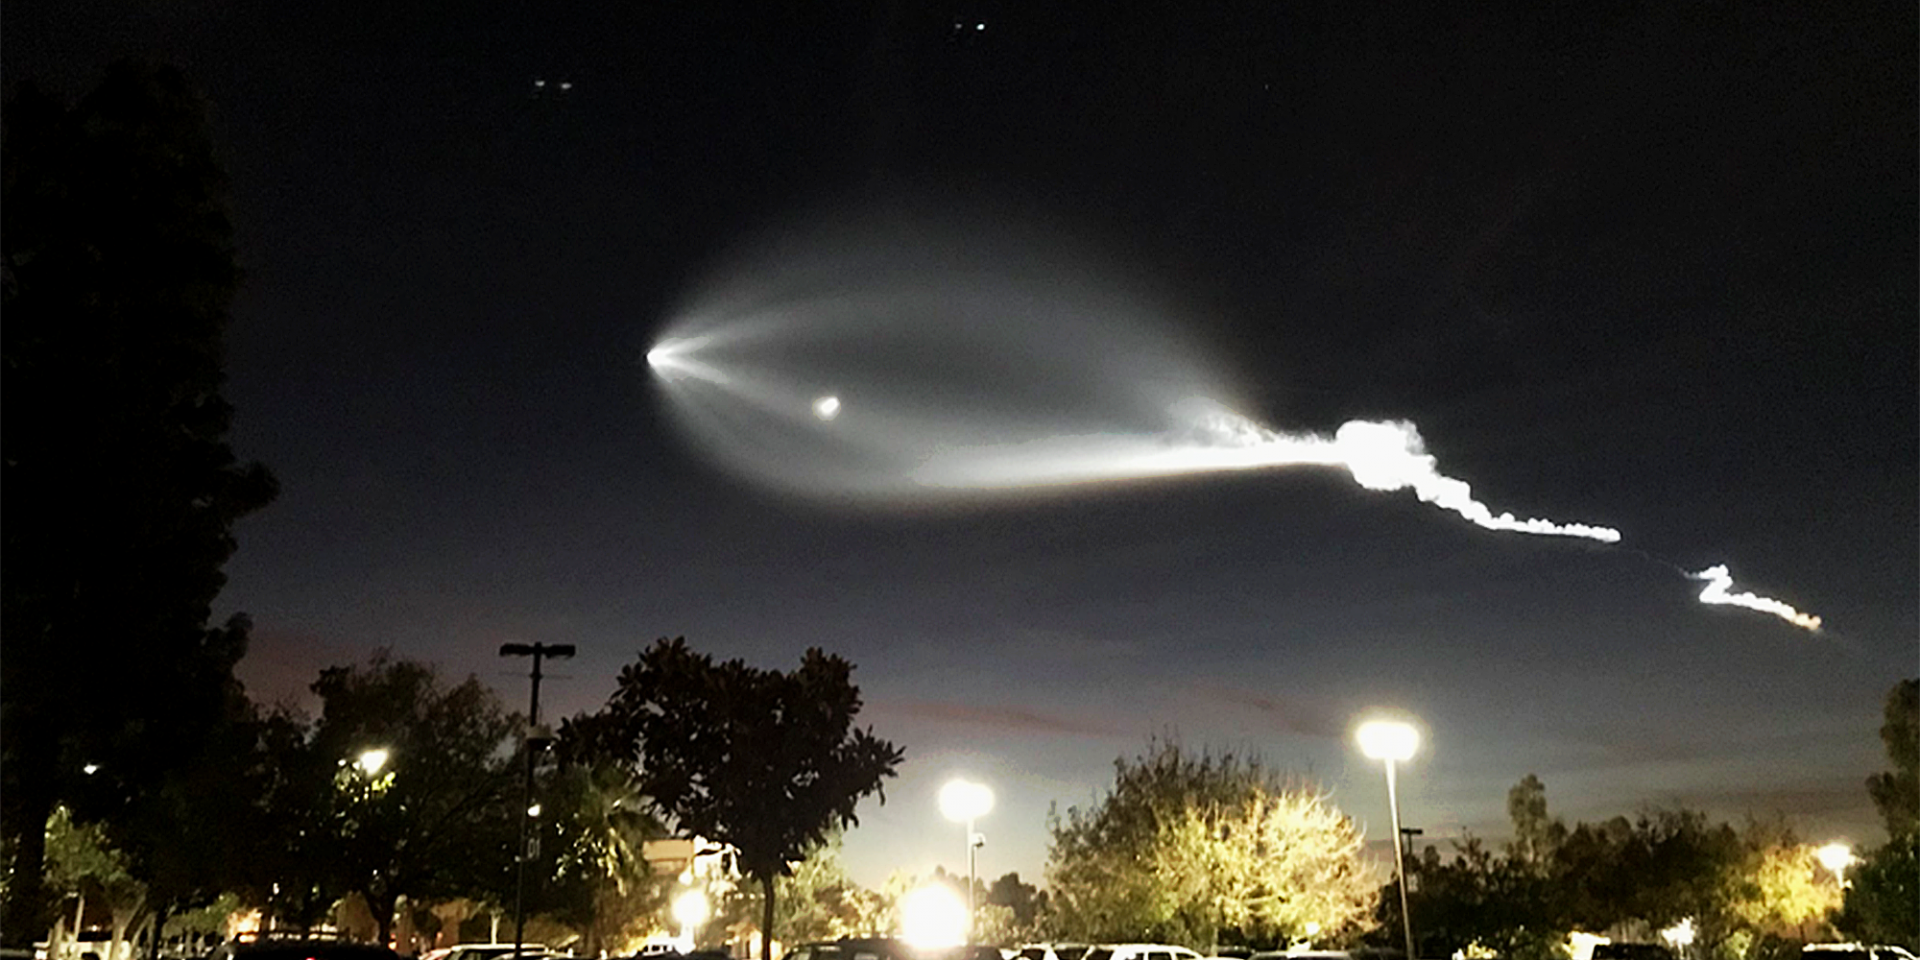 จรวด Falcon 9 ของ SpaceX ทะยานสู่อวกาศ : เกิดเป็นกลุ่มเมฆประหลาดเหนือท้องฟ้า